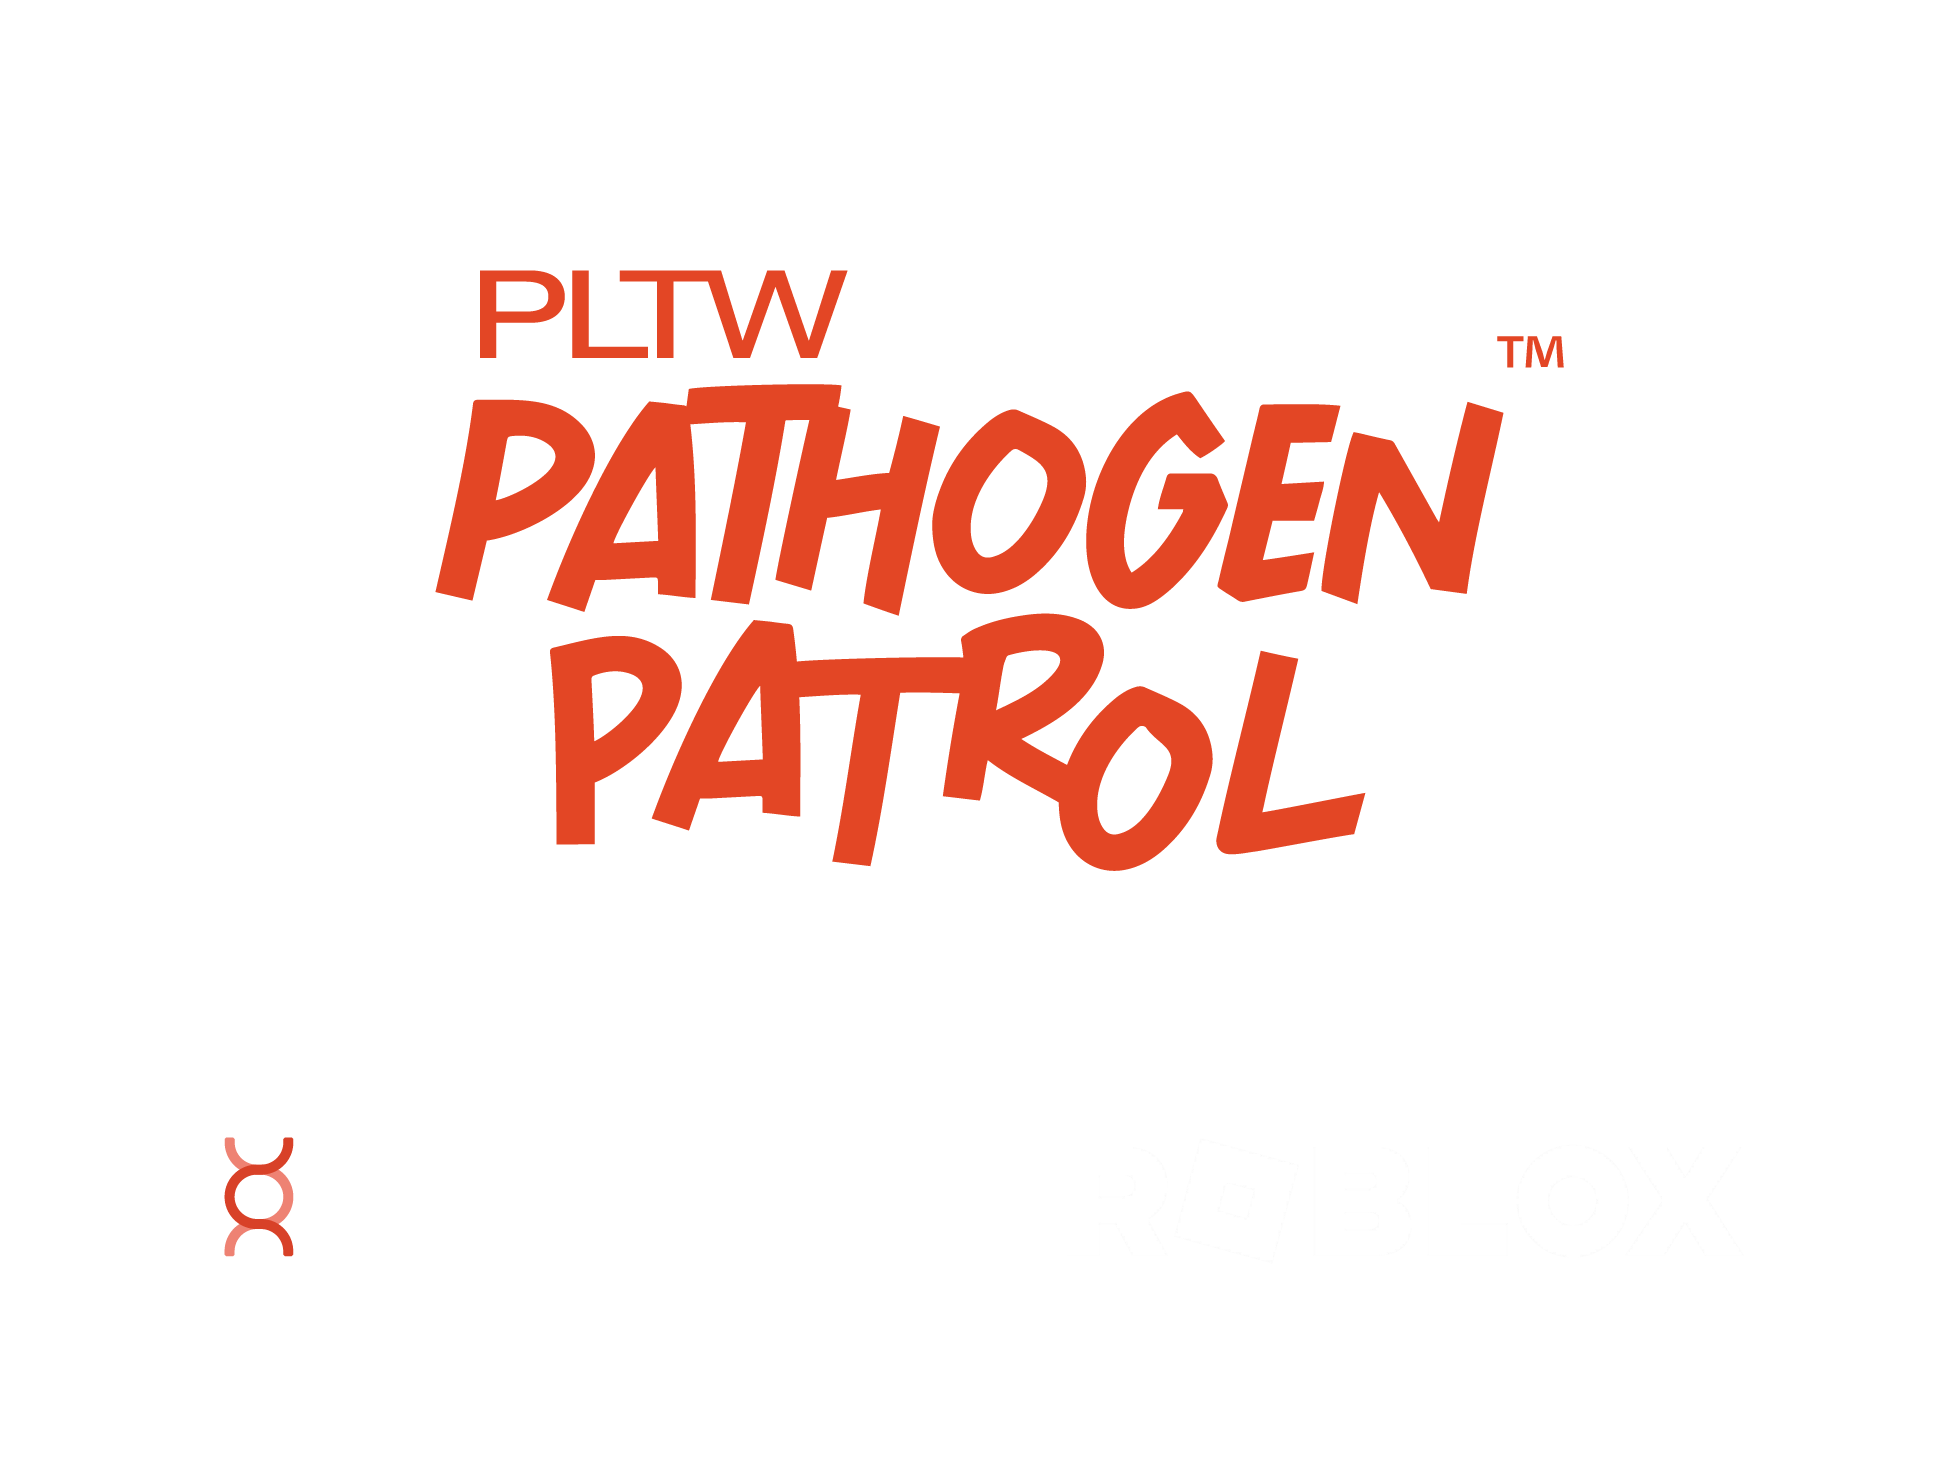 Pathogen Patrol Lock up 2x